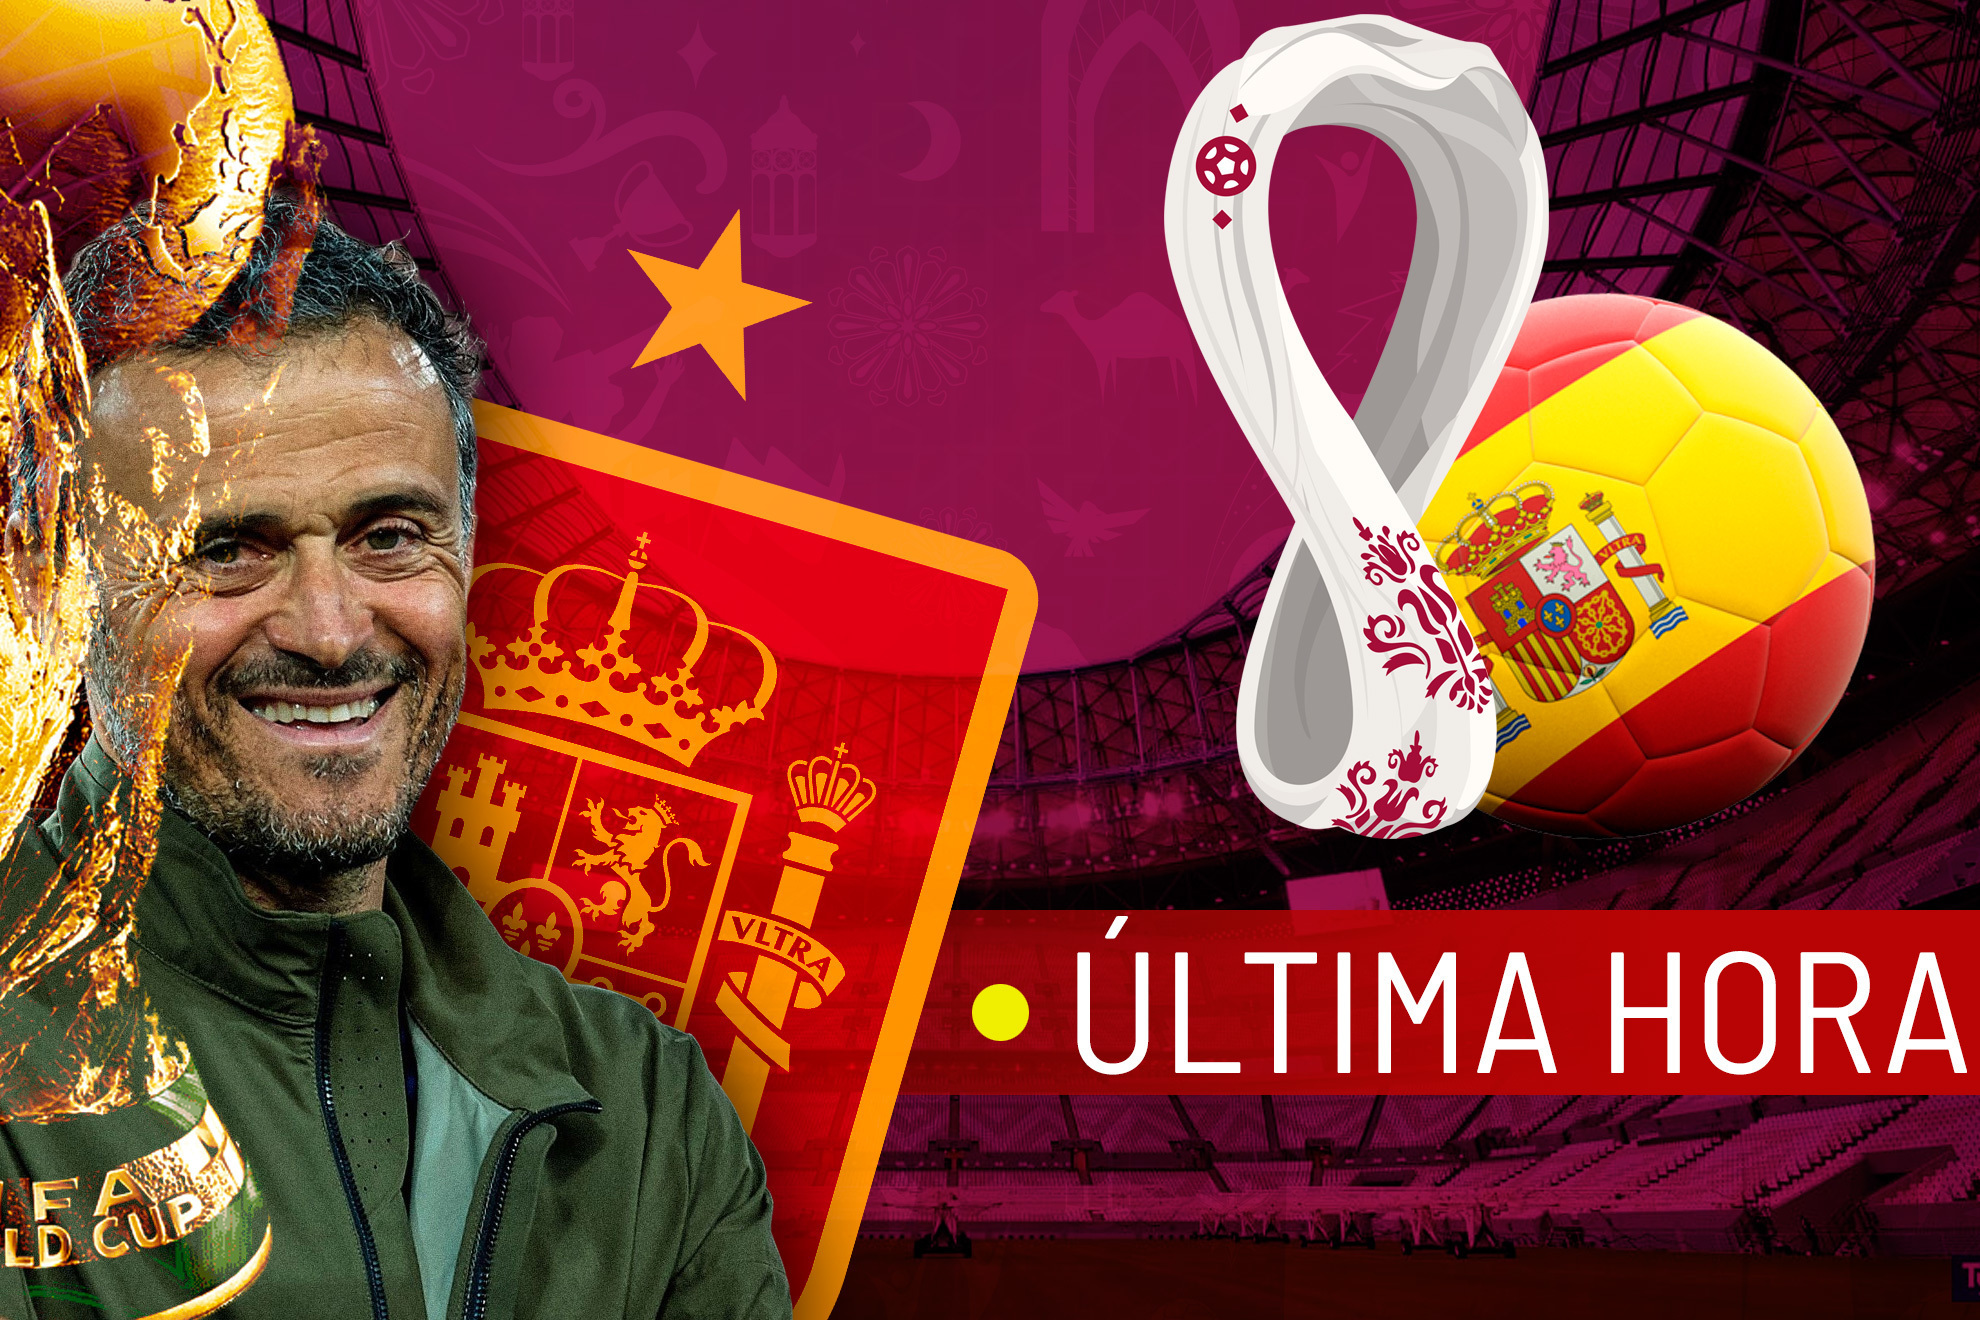 España en el Mundial de Qatar 2022 | Última hora y noticias de la selección española en la Copa del Mundo hoy en vivo